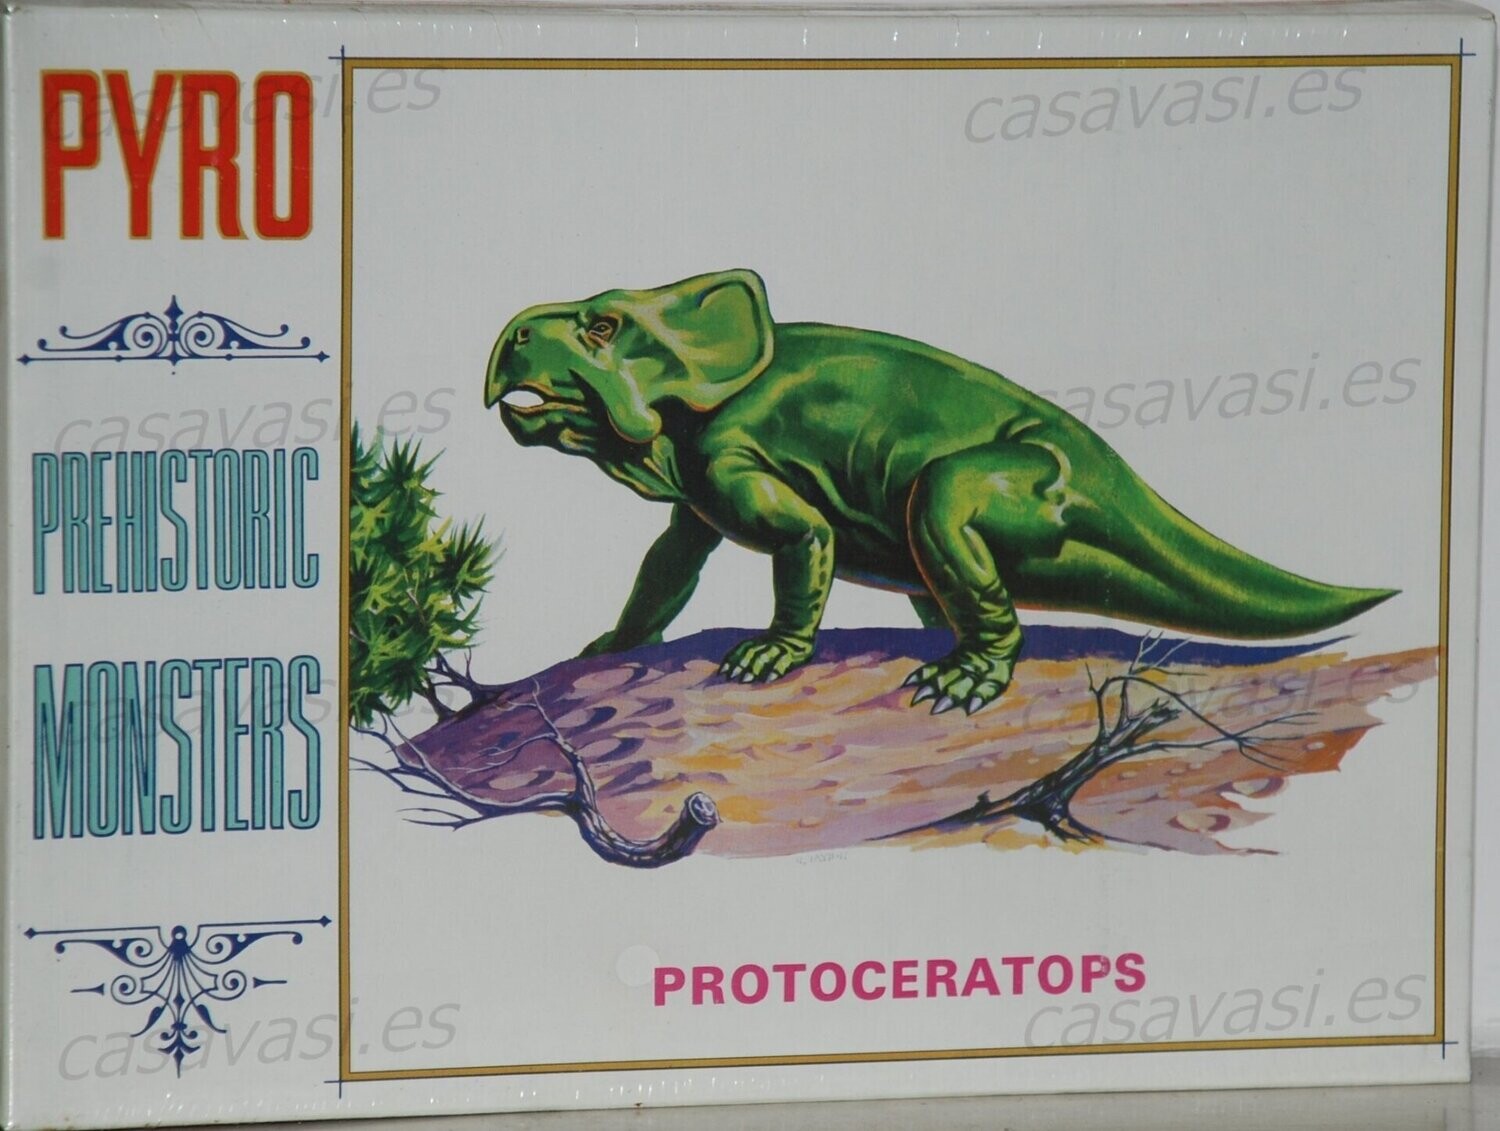 Pyro - d279-100 - Nº7 - Protoceratops
Box Size 25 x 18 cm.